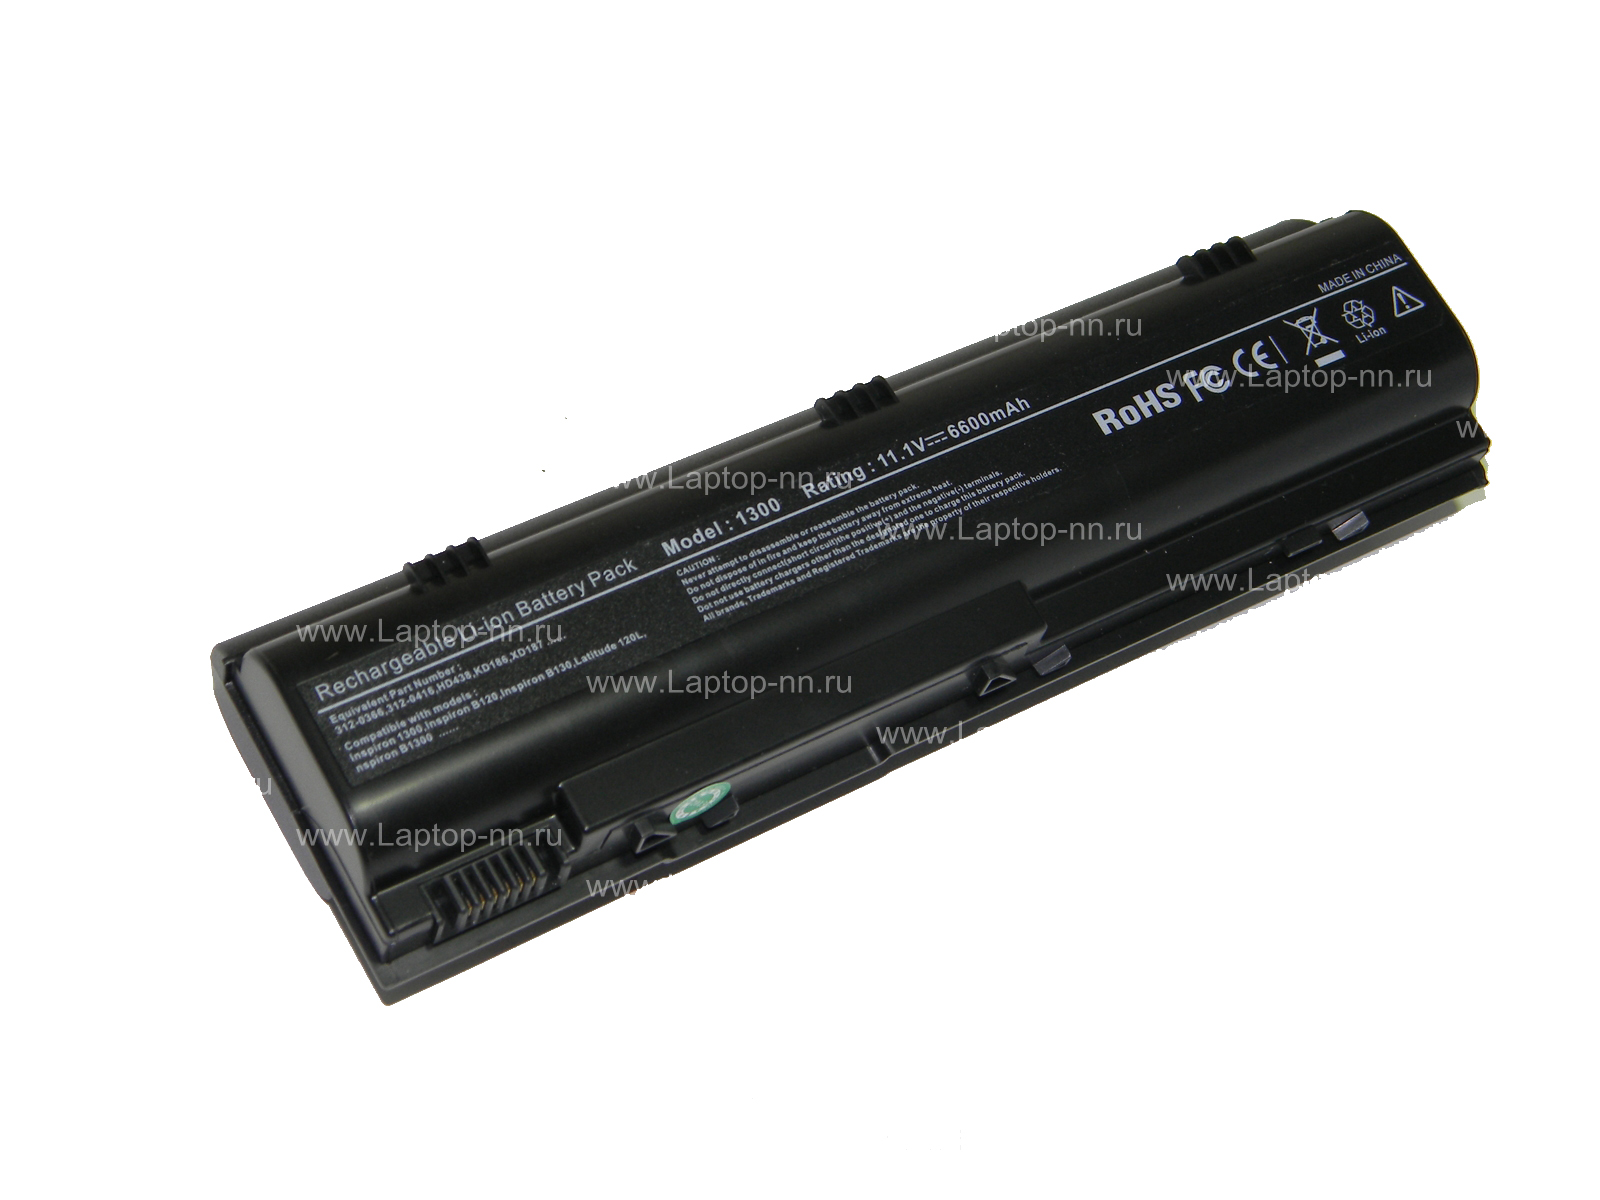 Купить аккумуляторную батарею для ноутбука Dell M1300 (312-0366) 6600 mAh в Нижнем Новгороде